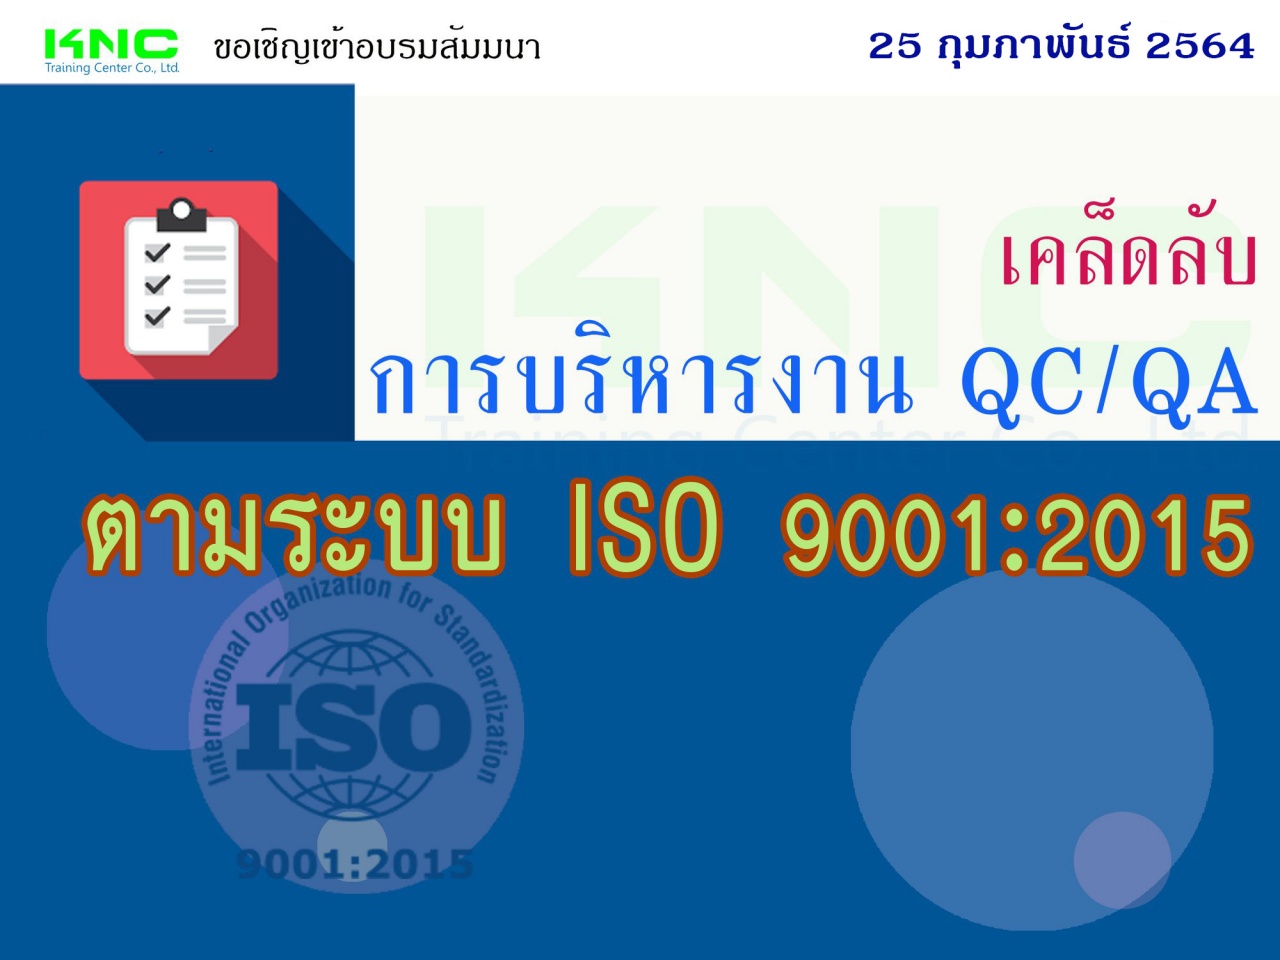 เคล็ดลับการบริหารงาน QC/QA ตามระบบ ISO 9001:2015